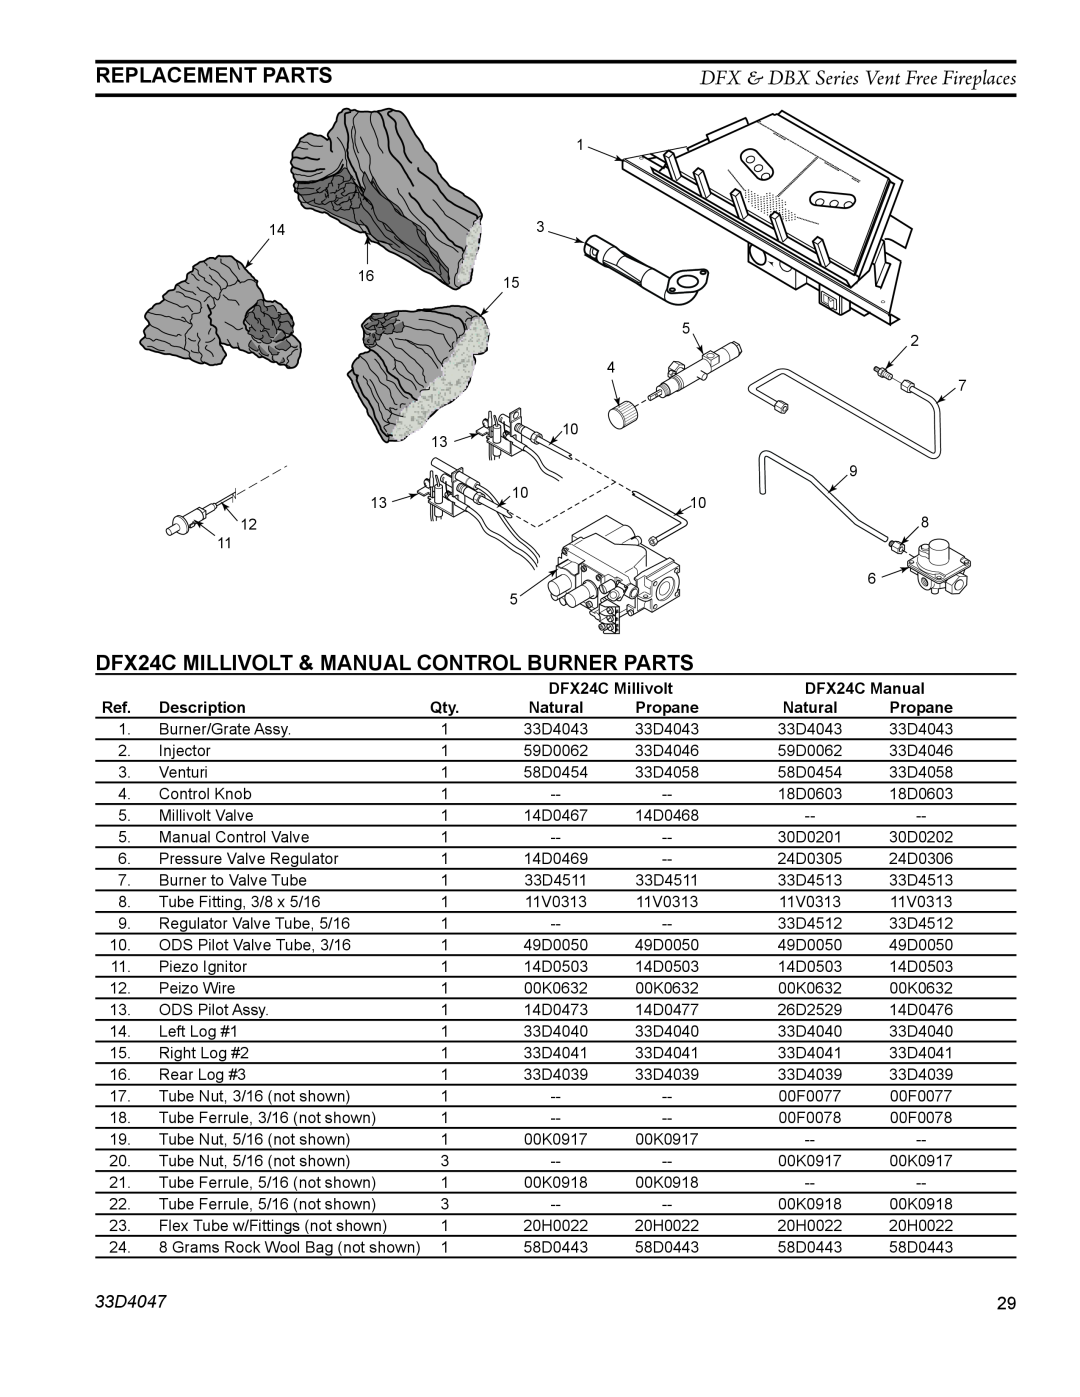 Monessen Hearth operating instructions Replacement Parts, DFX24C Millivolt & Manual Control Burner Parts, 33D4047 